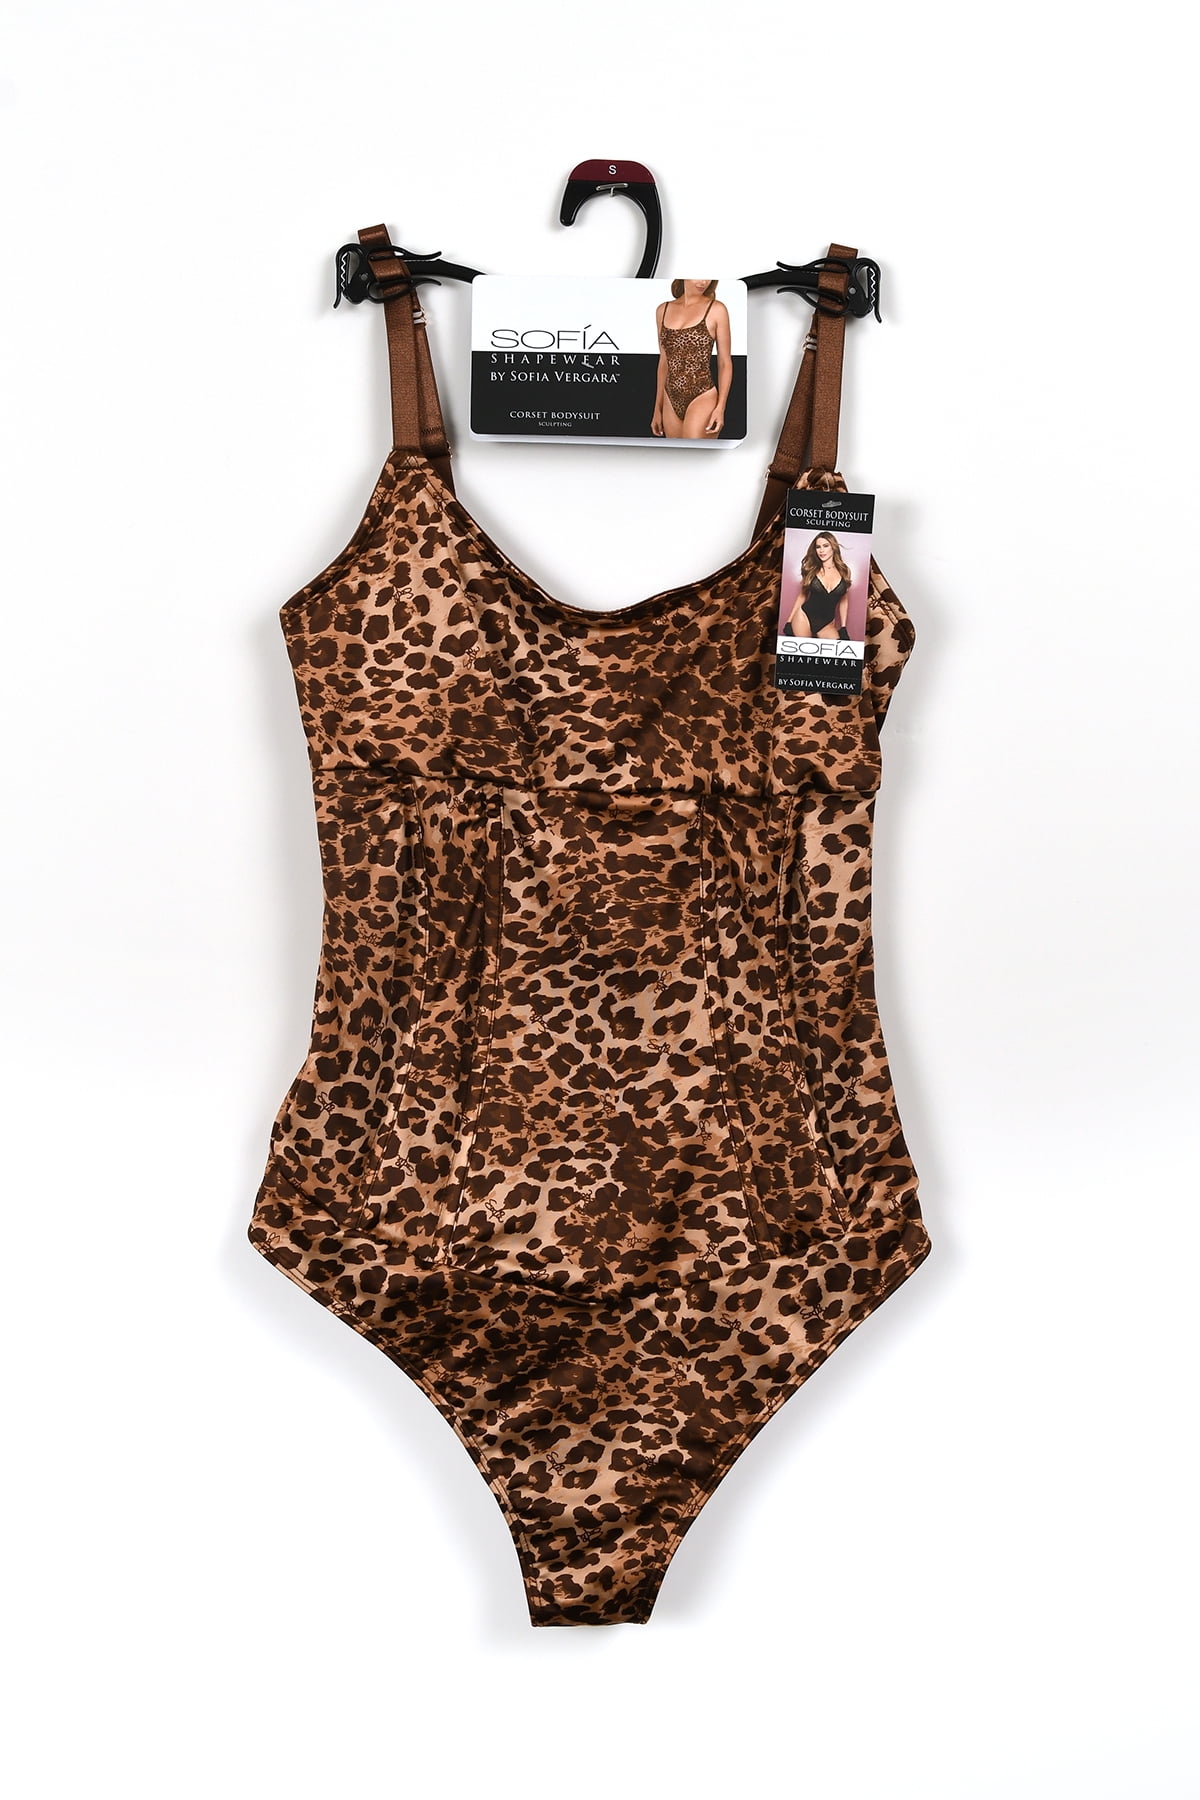 Soft Sculpt Bodysuit  New:Cotton (Baby Leopard) – Parade